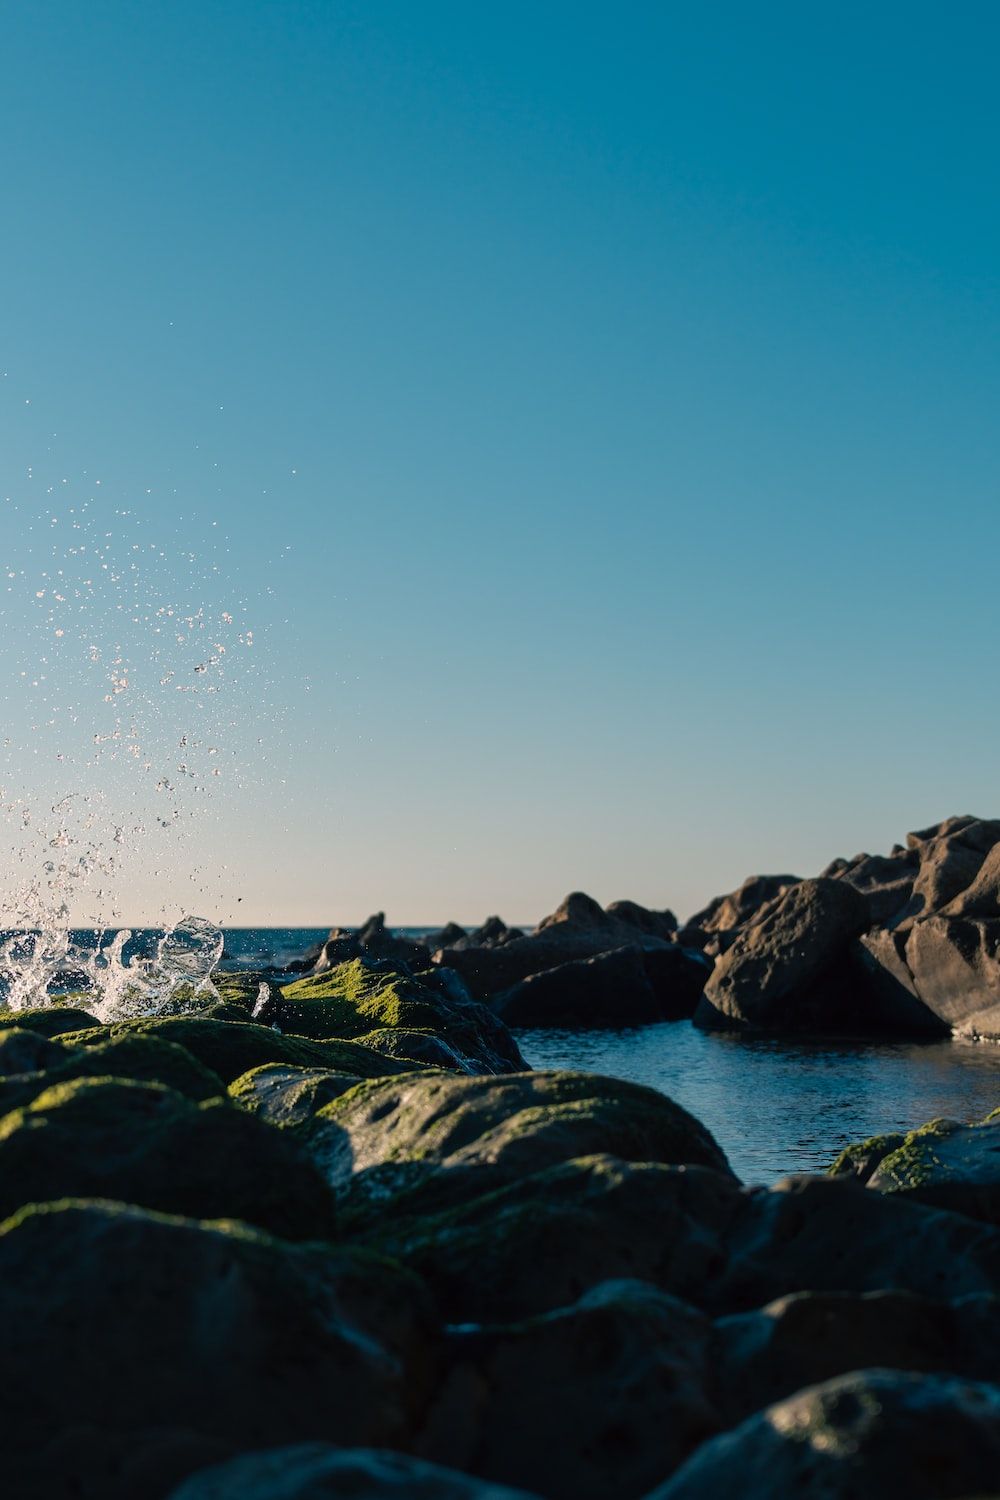  Fels Hintergrundbild 1000x1500. Foto zum Thema Eine person auf einem surfbrett im wasser in der nähe von felsen